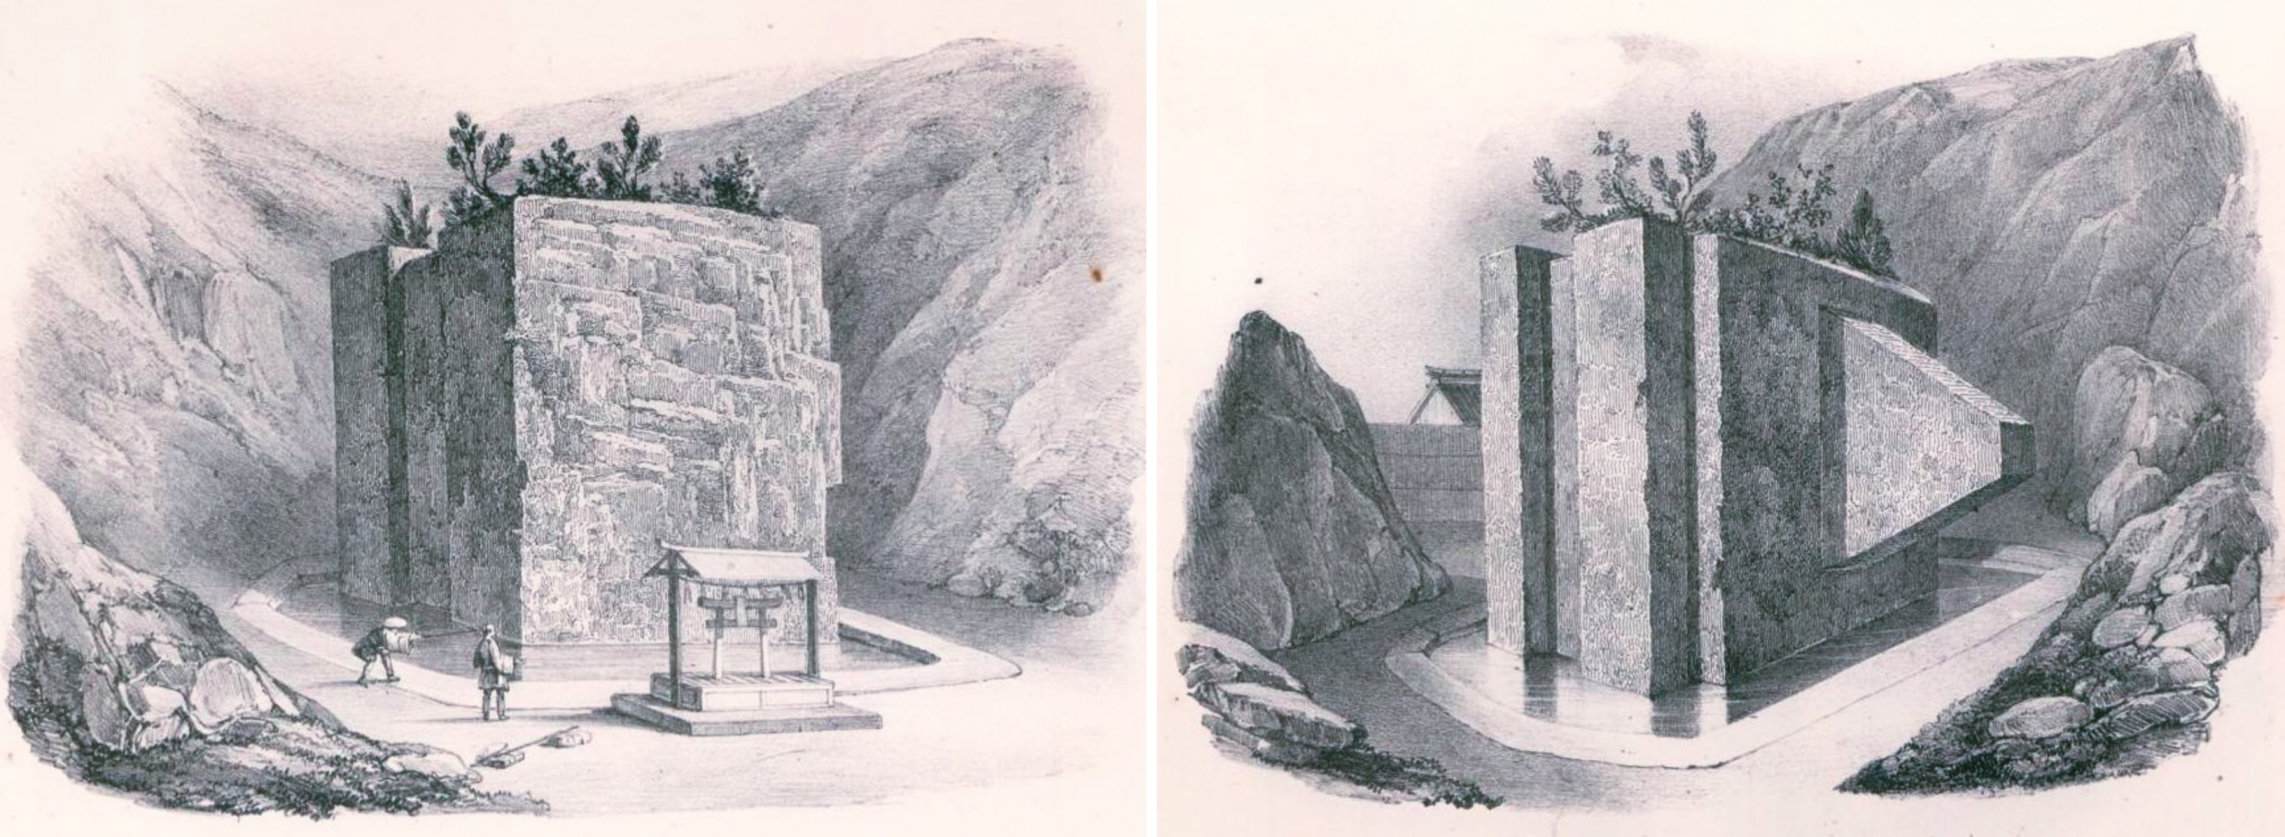 مکانیسم های باستانی: آیا غول ها این سنگ شکن ژاپنی را با وزن صدها تن ساخته اند؟ 1